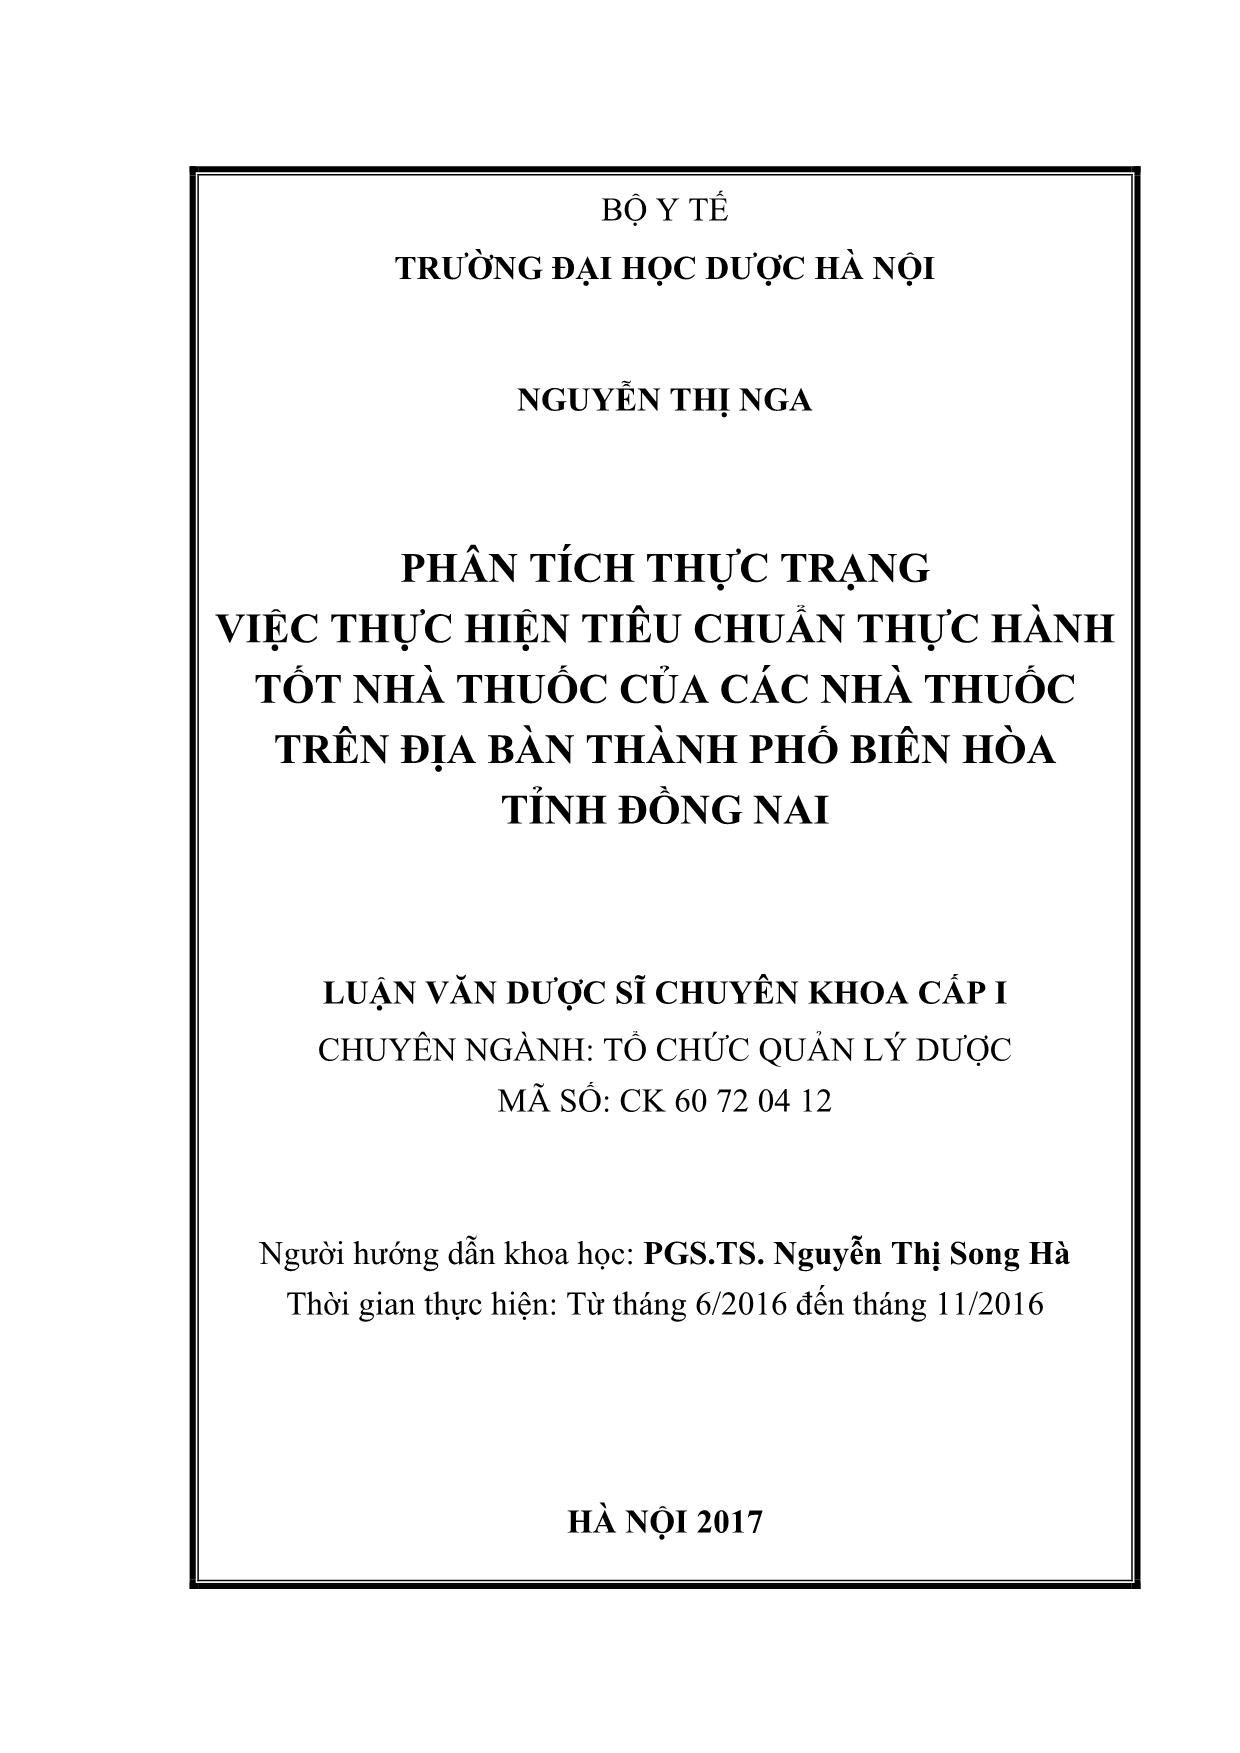 Phân tích thực trạng việc thực hiện tiêu chuẩn thực hành tốt nhà thuốc của các nhà thuốc trên địa bàn thành phố Biên hòa tỉnh Đồng Nai trang 2